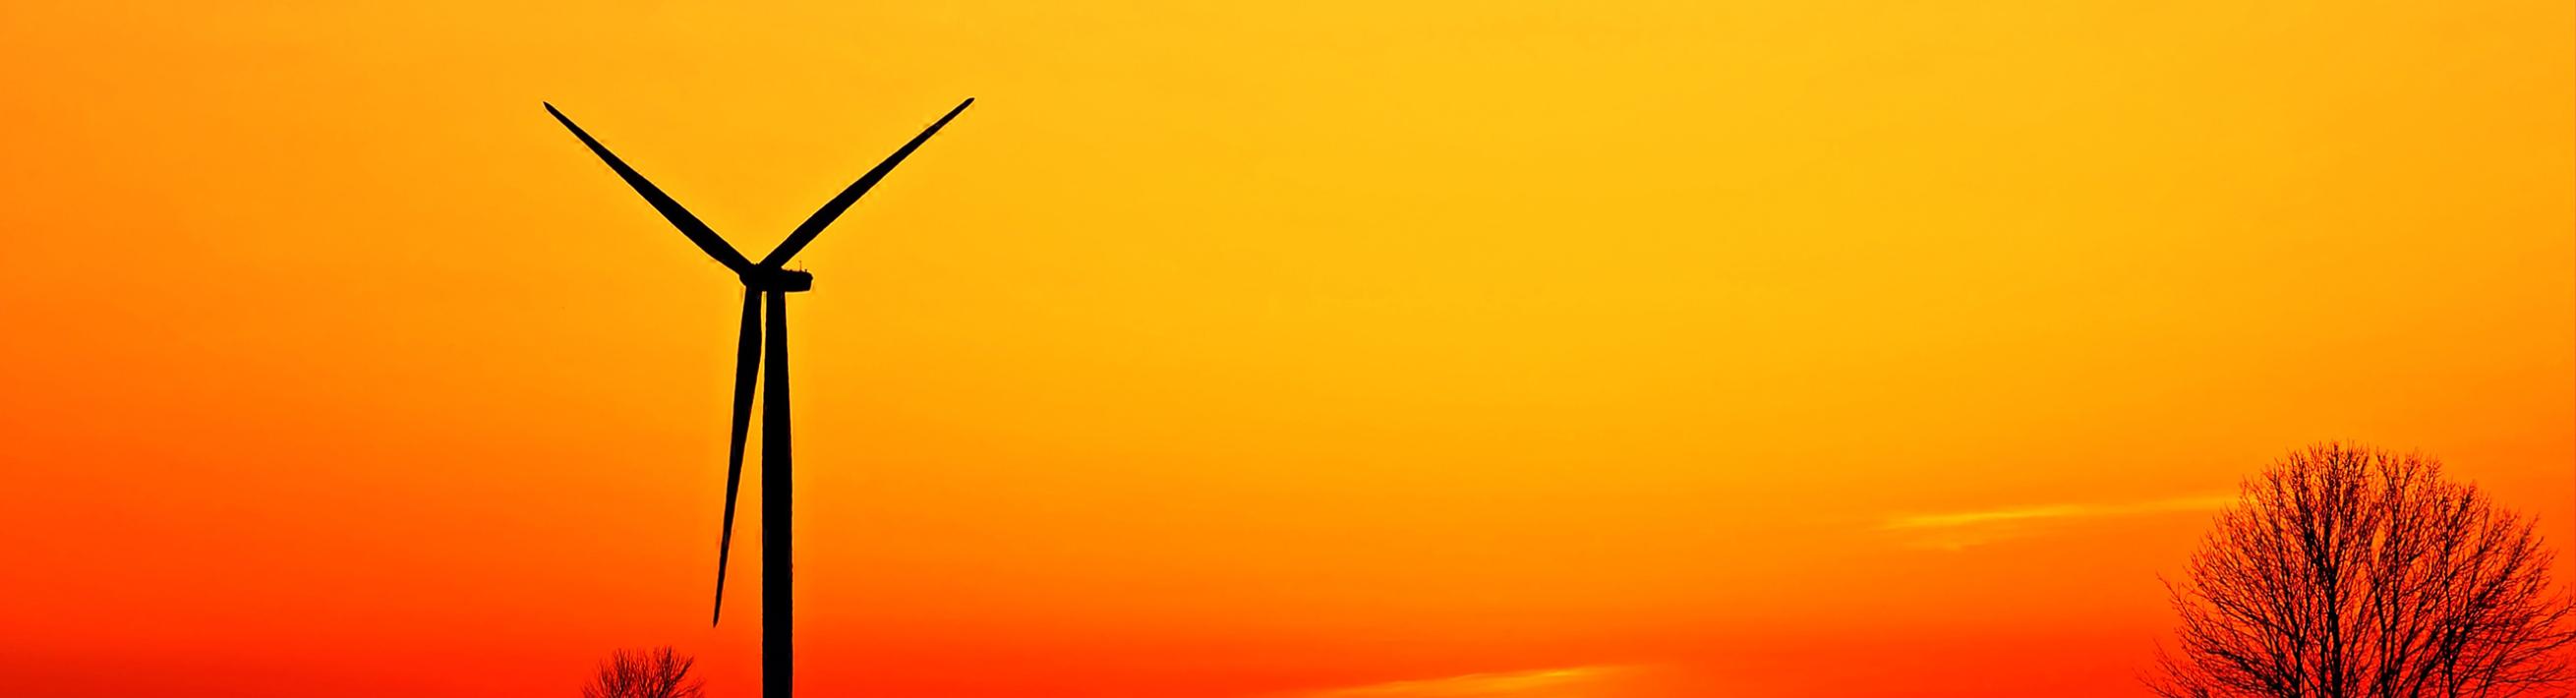 Wind Turbine with sunset behind on farmland